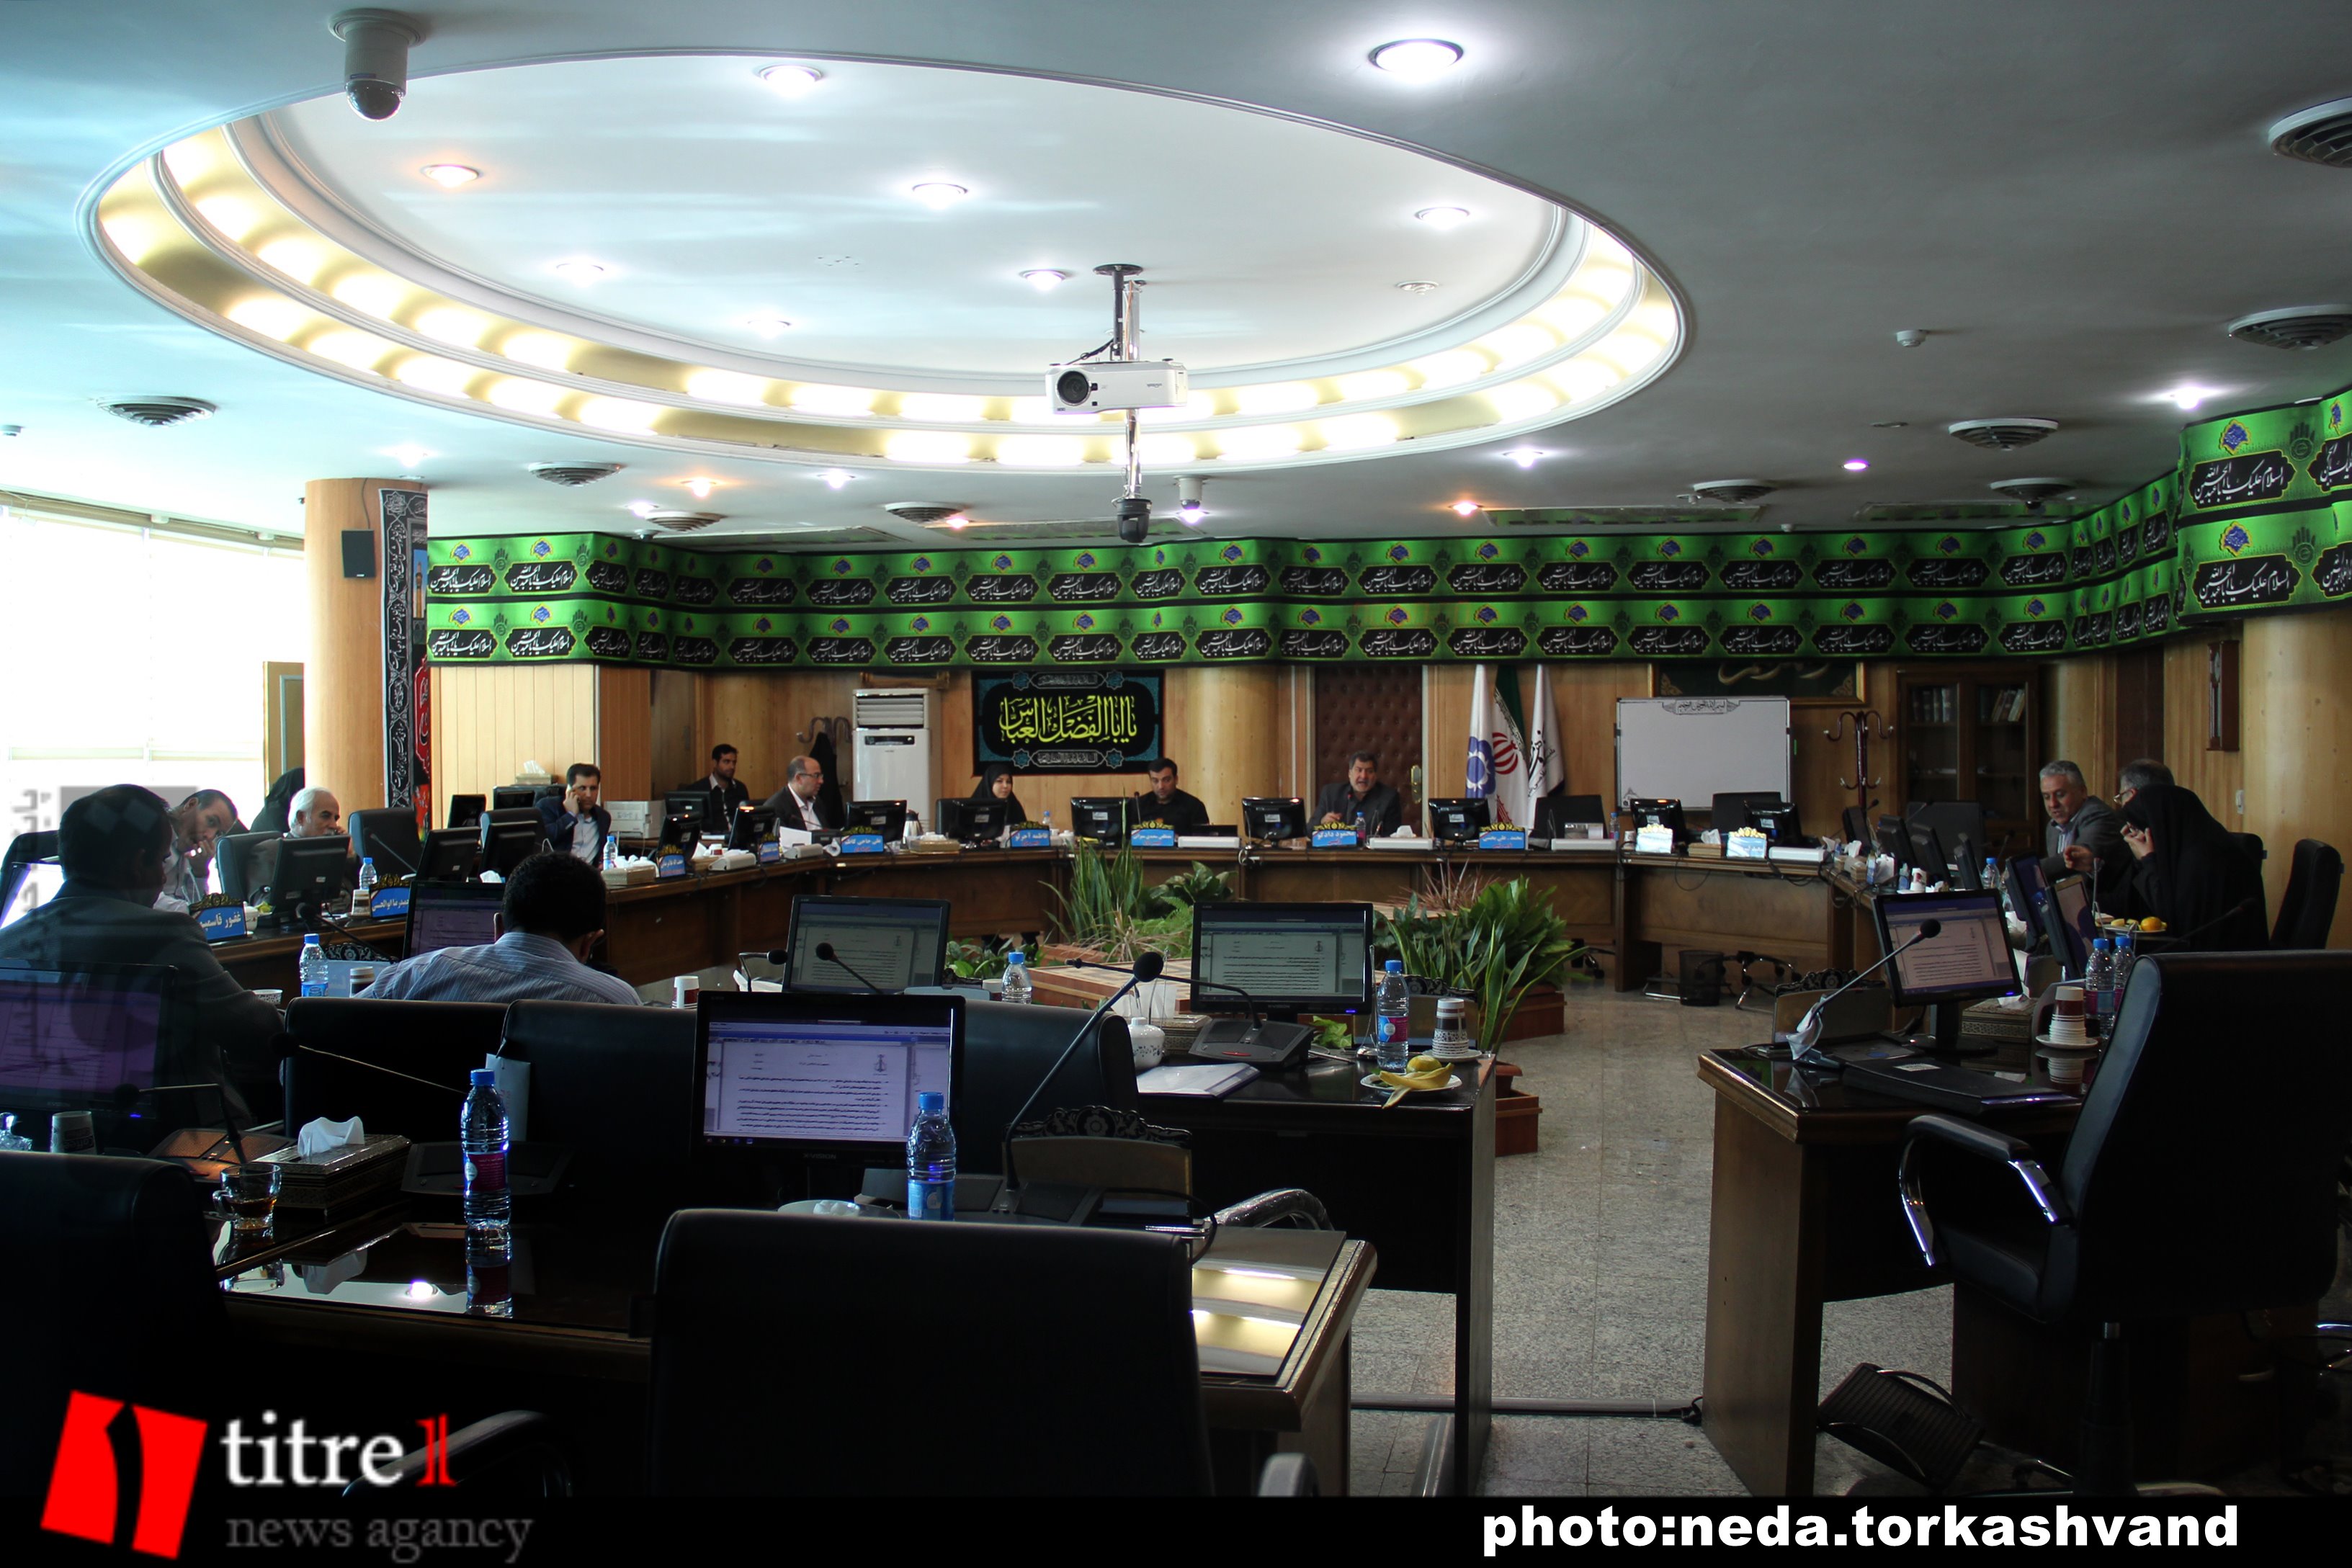 جلسه امروز شورای شهر کرج به دلیل غیبت اعضاء لغو شد/ کارگروه حقوق و دستمزد تشکیل می شود